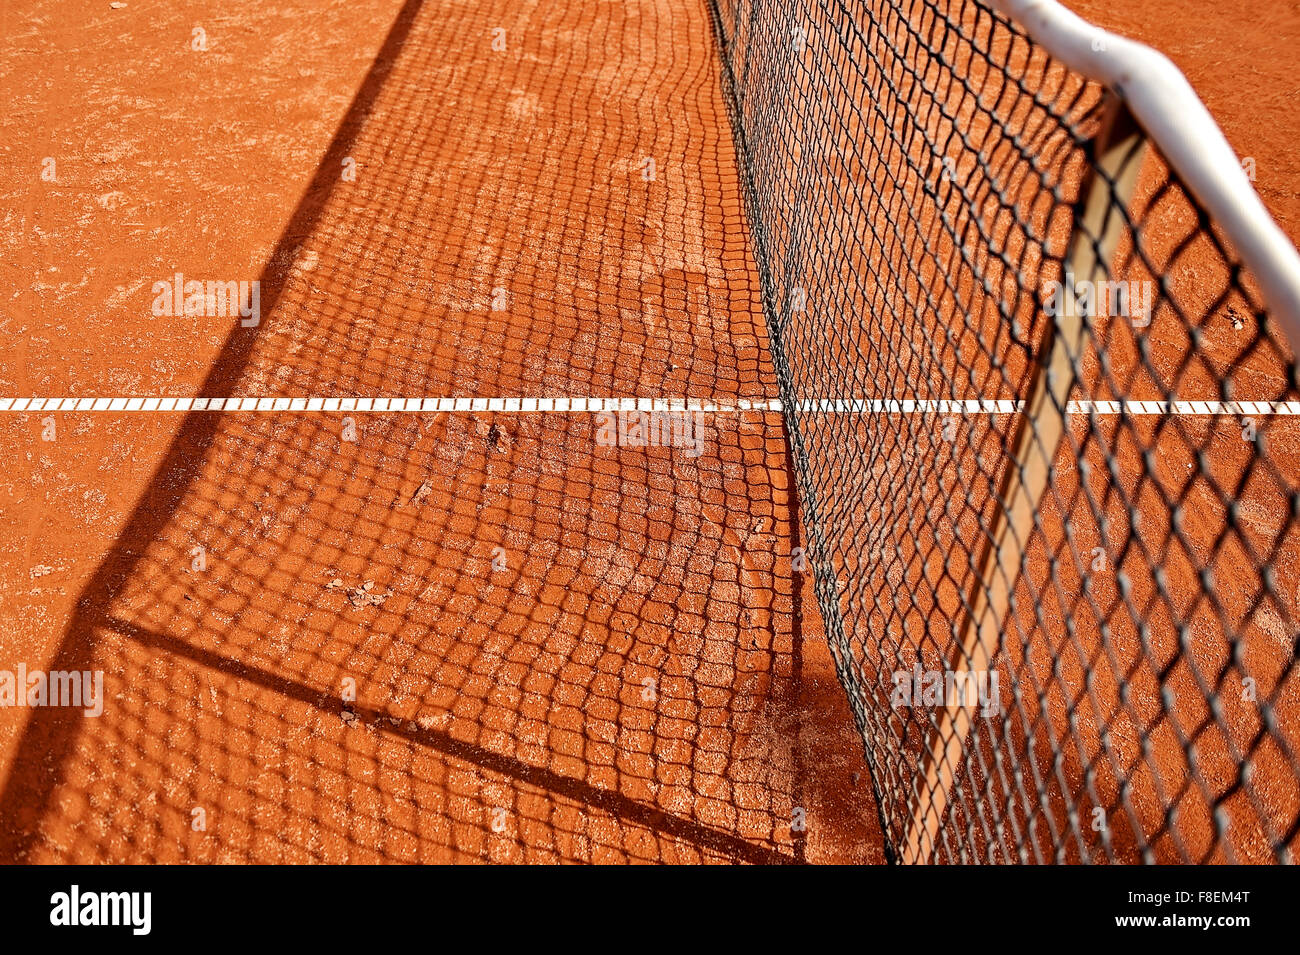 Dettaglio delle riprese con un tennis net su un campo da tennis in terra battuta Foto Stock